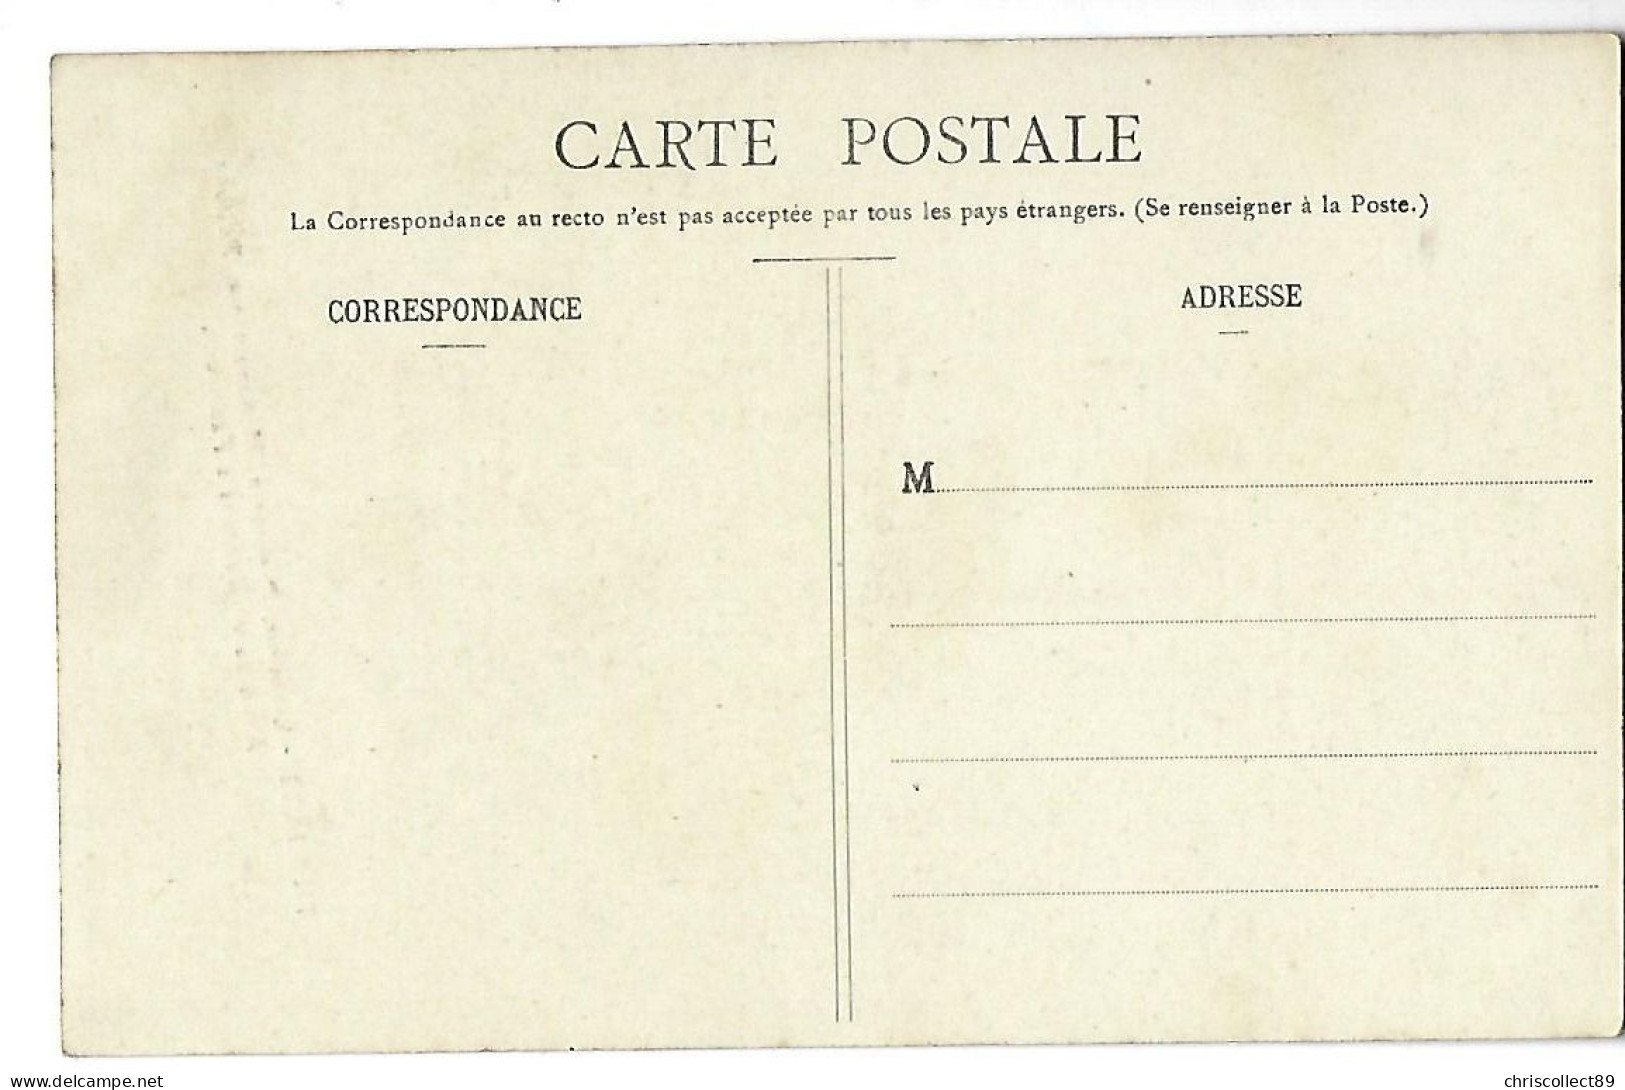 Carte Postale  Thouars - Librairie - Papeterie - Maroquinerie - Reliures - Dépôt Central Du Petit Journal - Thouars